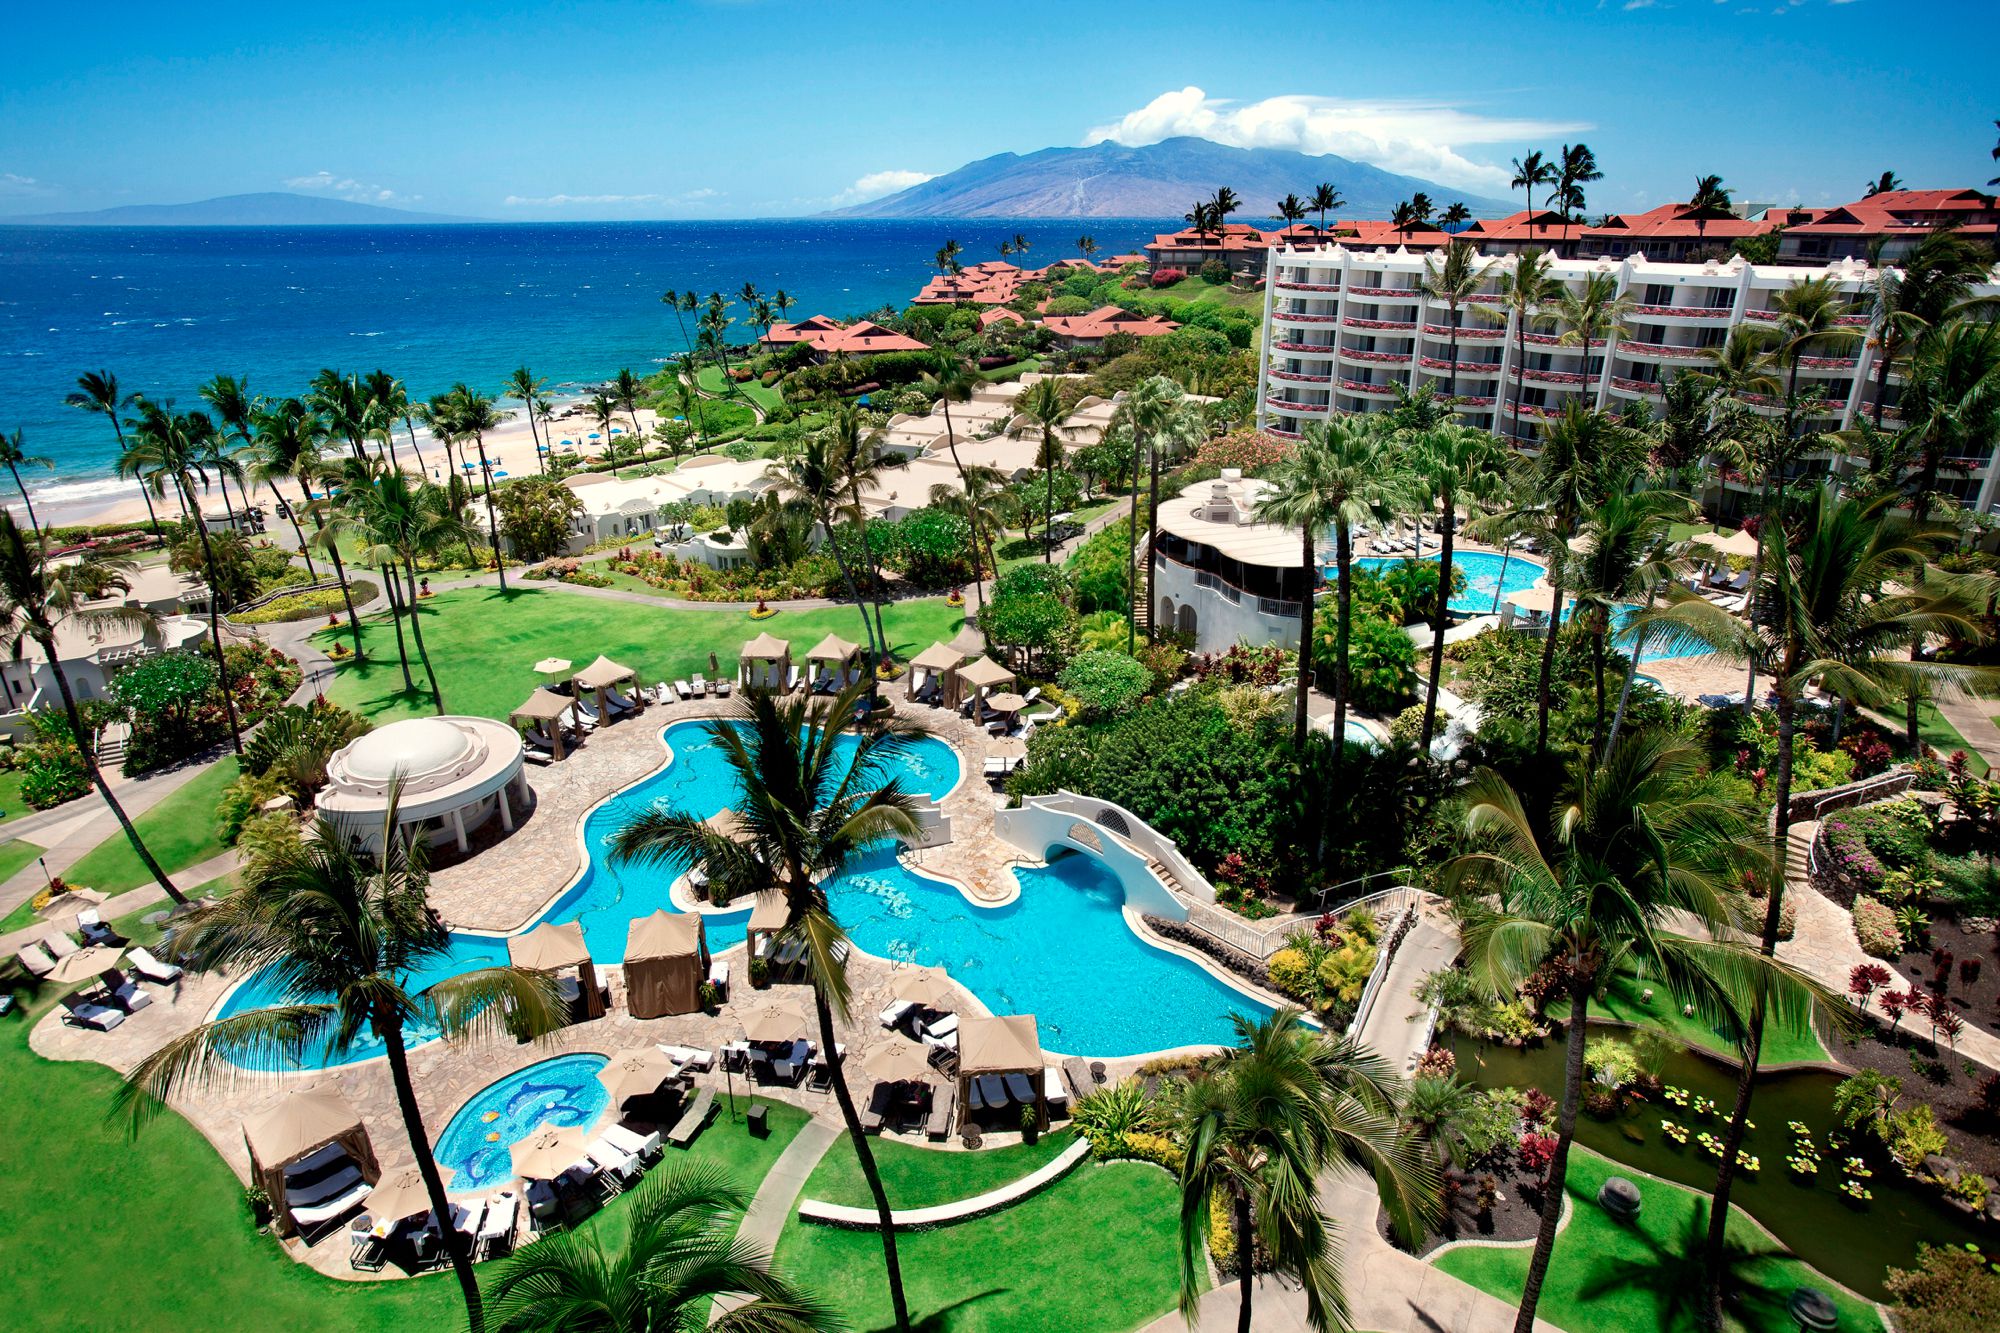 هتل ساحلی هاوایی اقامتگاهی است که حد فاصل آن و دریا استخرهای کوچک بسیار زیبا وجود دارد